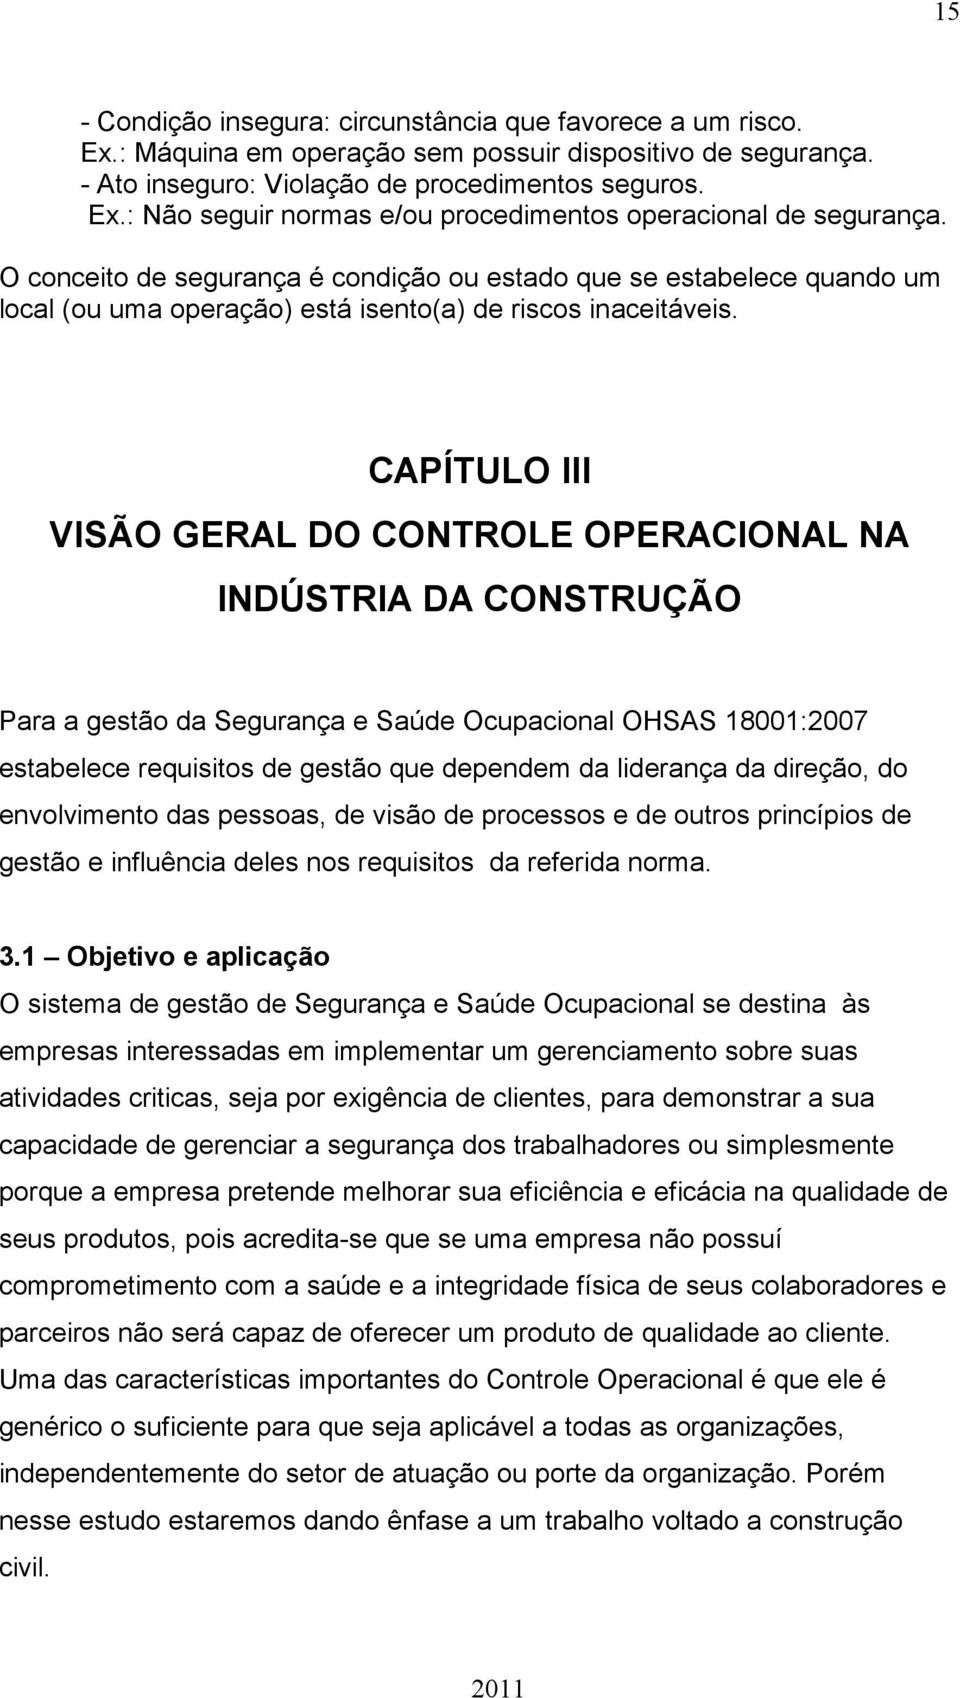 CAPÍTULO III VISÃO GERAL DO CONTROLE OPERACIONAL NA INDÚSTRIA DA CONSTRUÇÃO Para a gestão da Segurança e Saúde Ocupacional OHSAS 18001:2007 estabelece requisitos de gestão que dependem da liderança